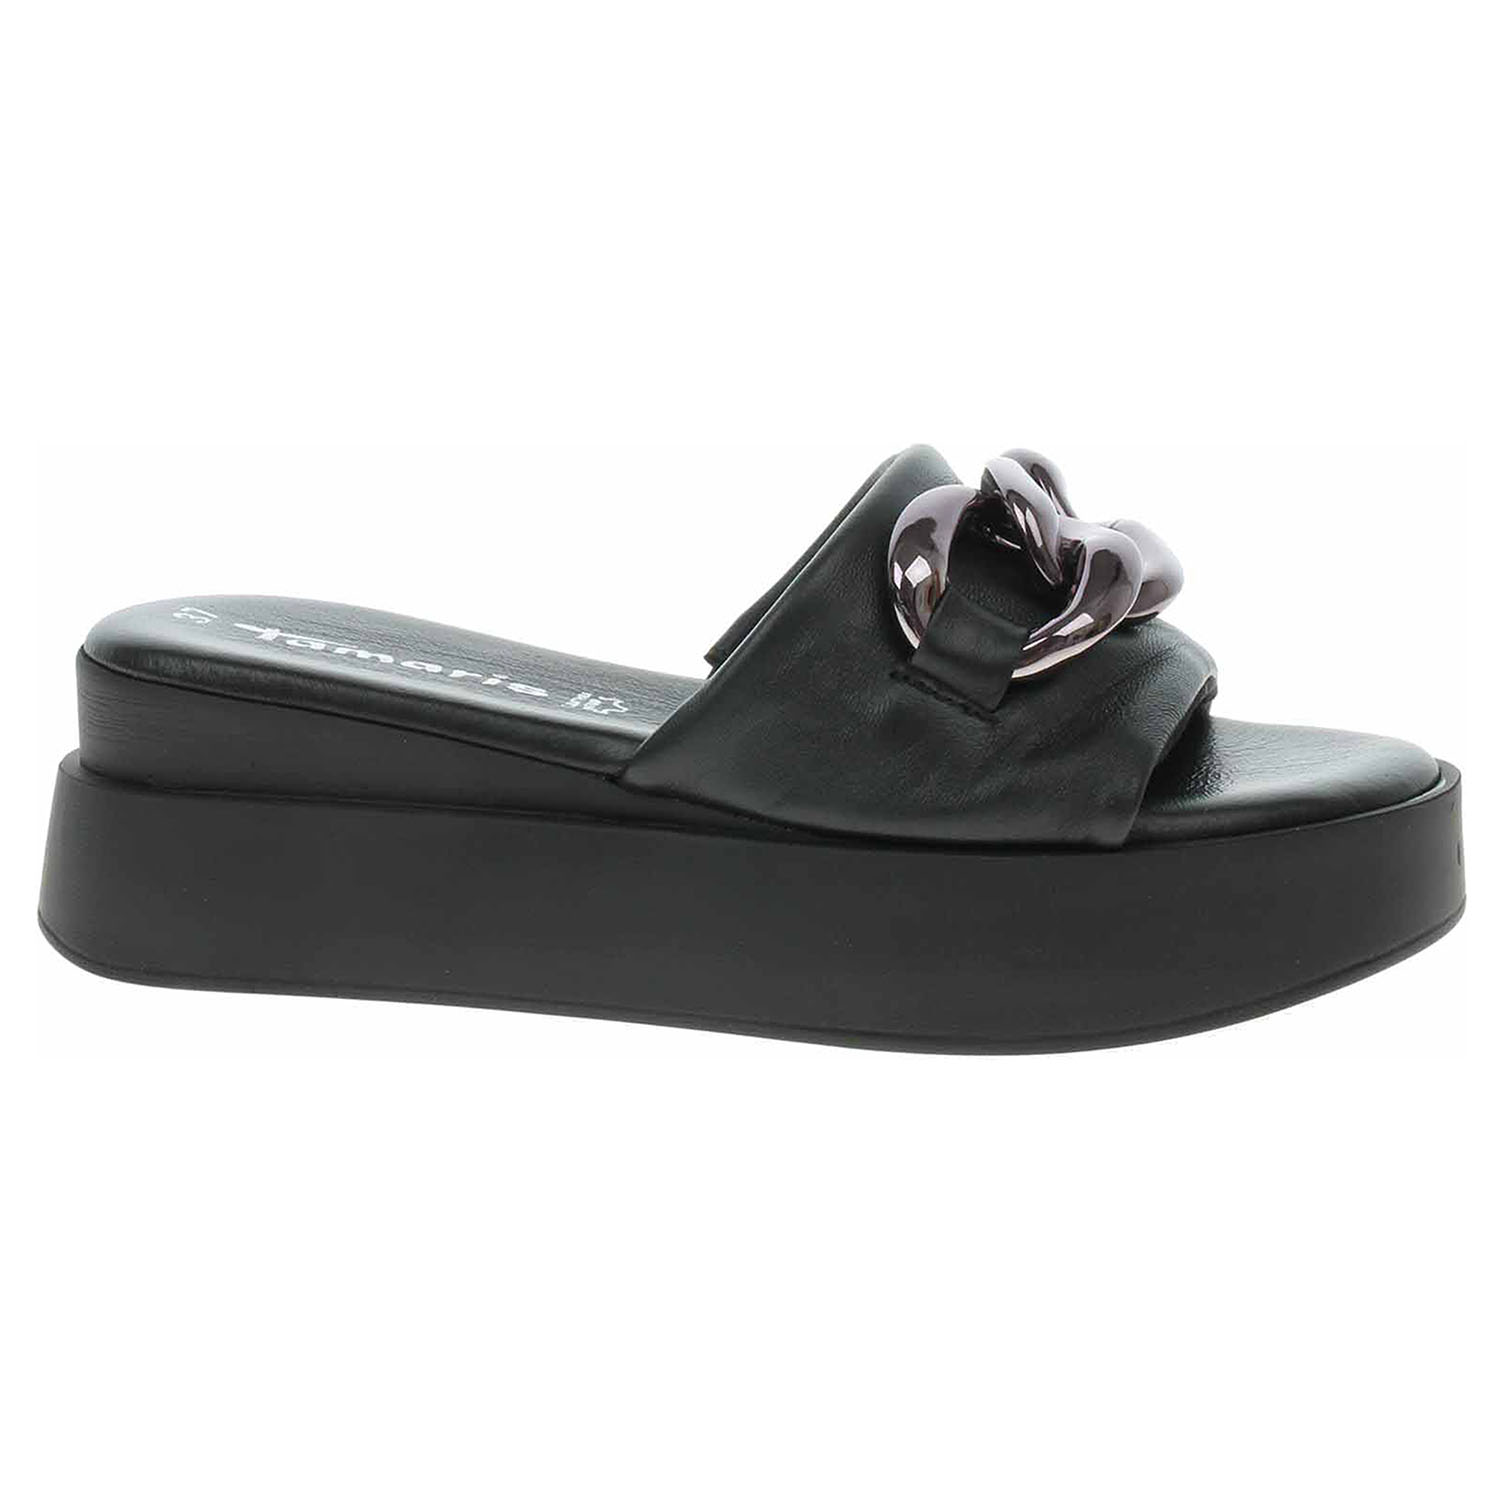 Dámské pantofle Tamaris 1-27215-20 black